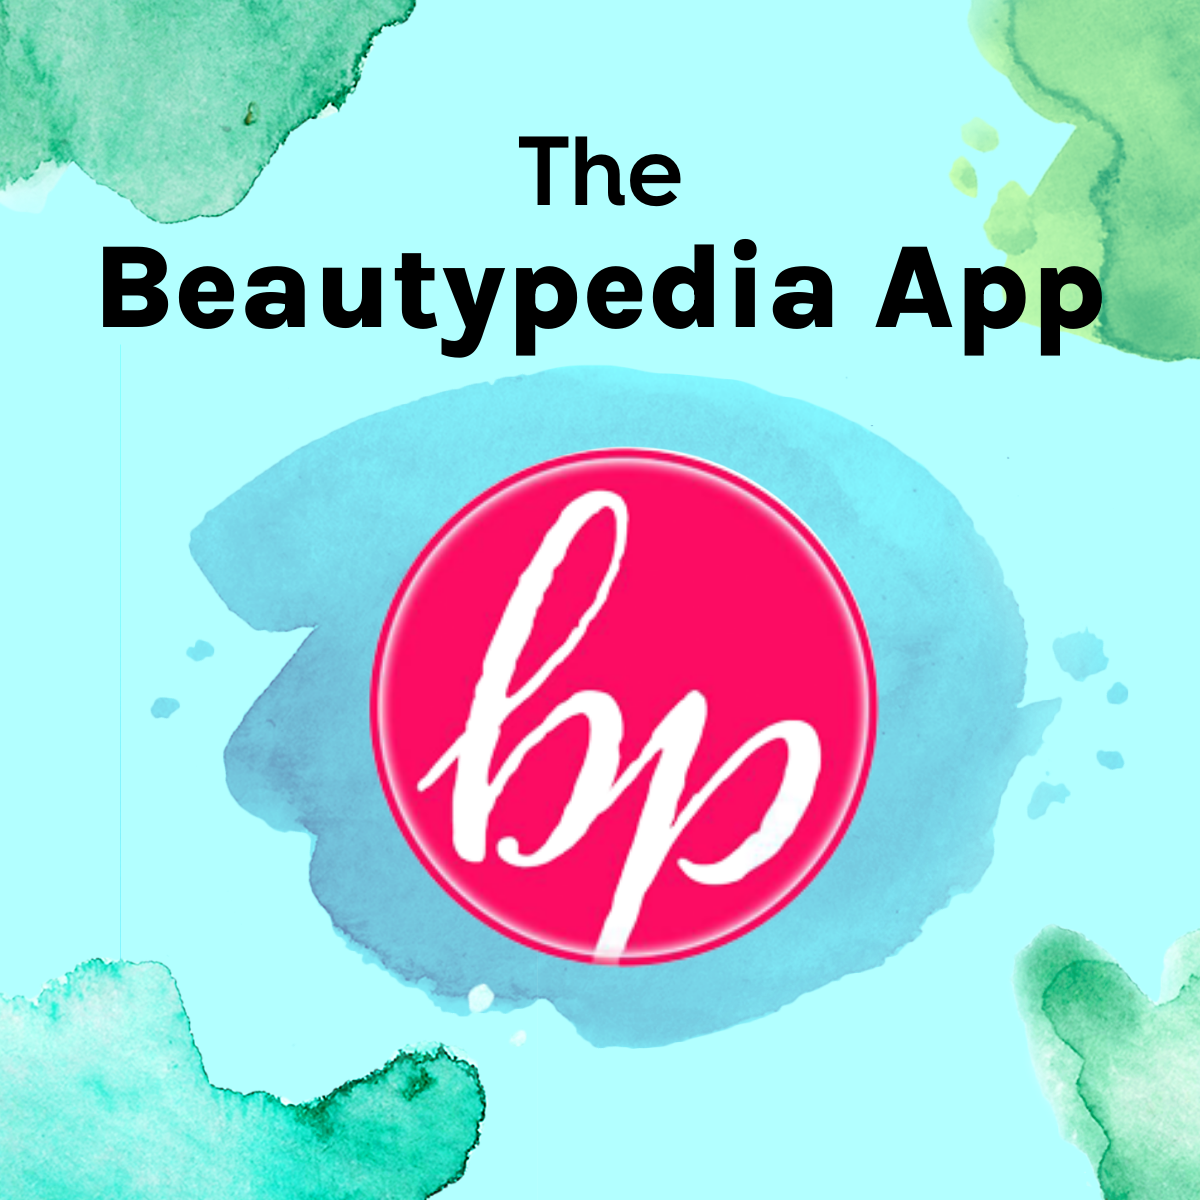 The Beautypedia App